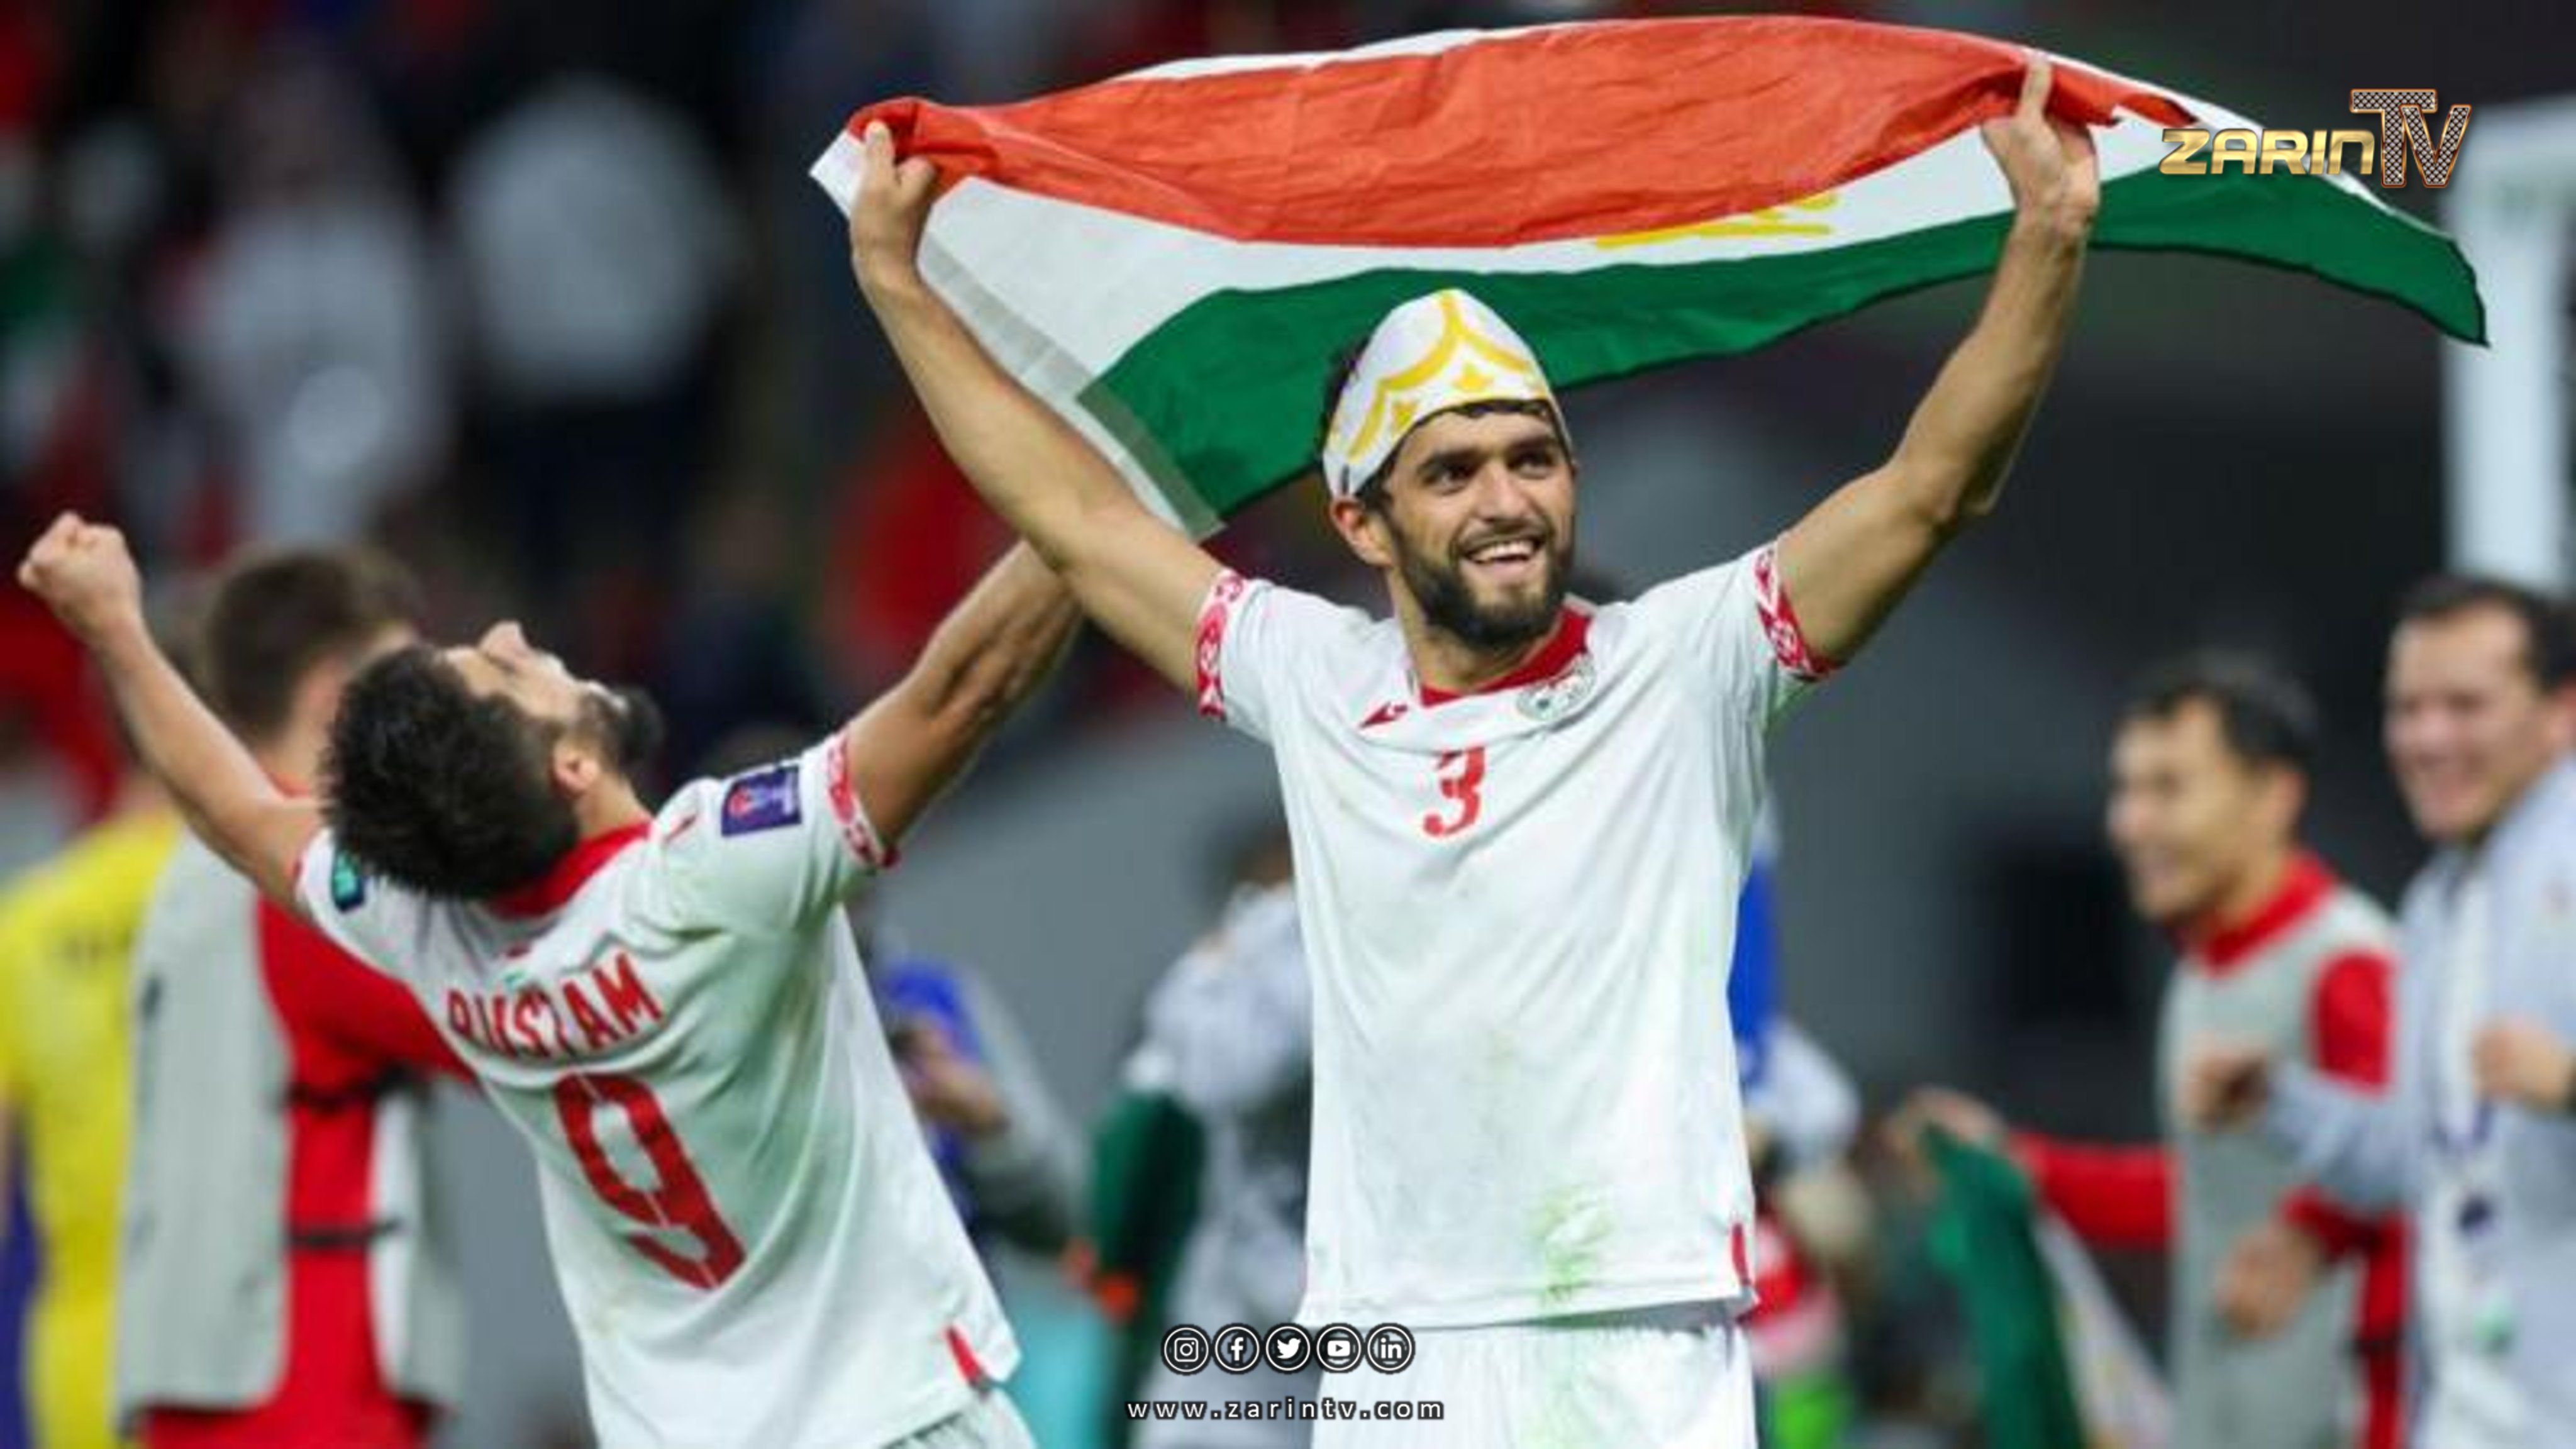 تیم ملی فوتبال تاجیکستان تاریخ سازی کرد و به هشت تیم برتر جام ملت های فوتبال آسیا صعود کرد.